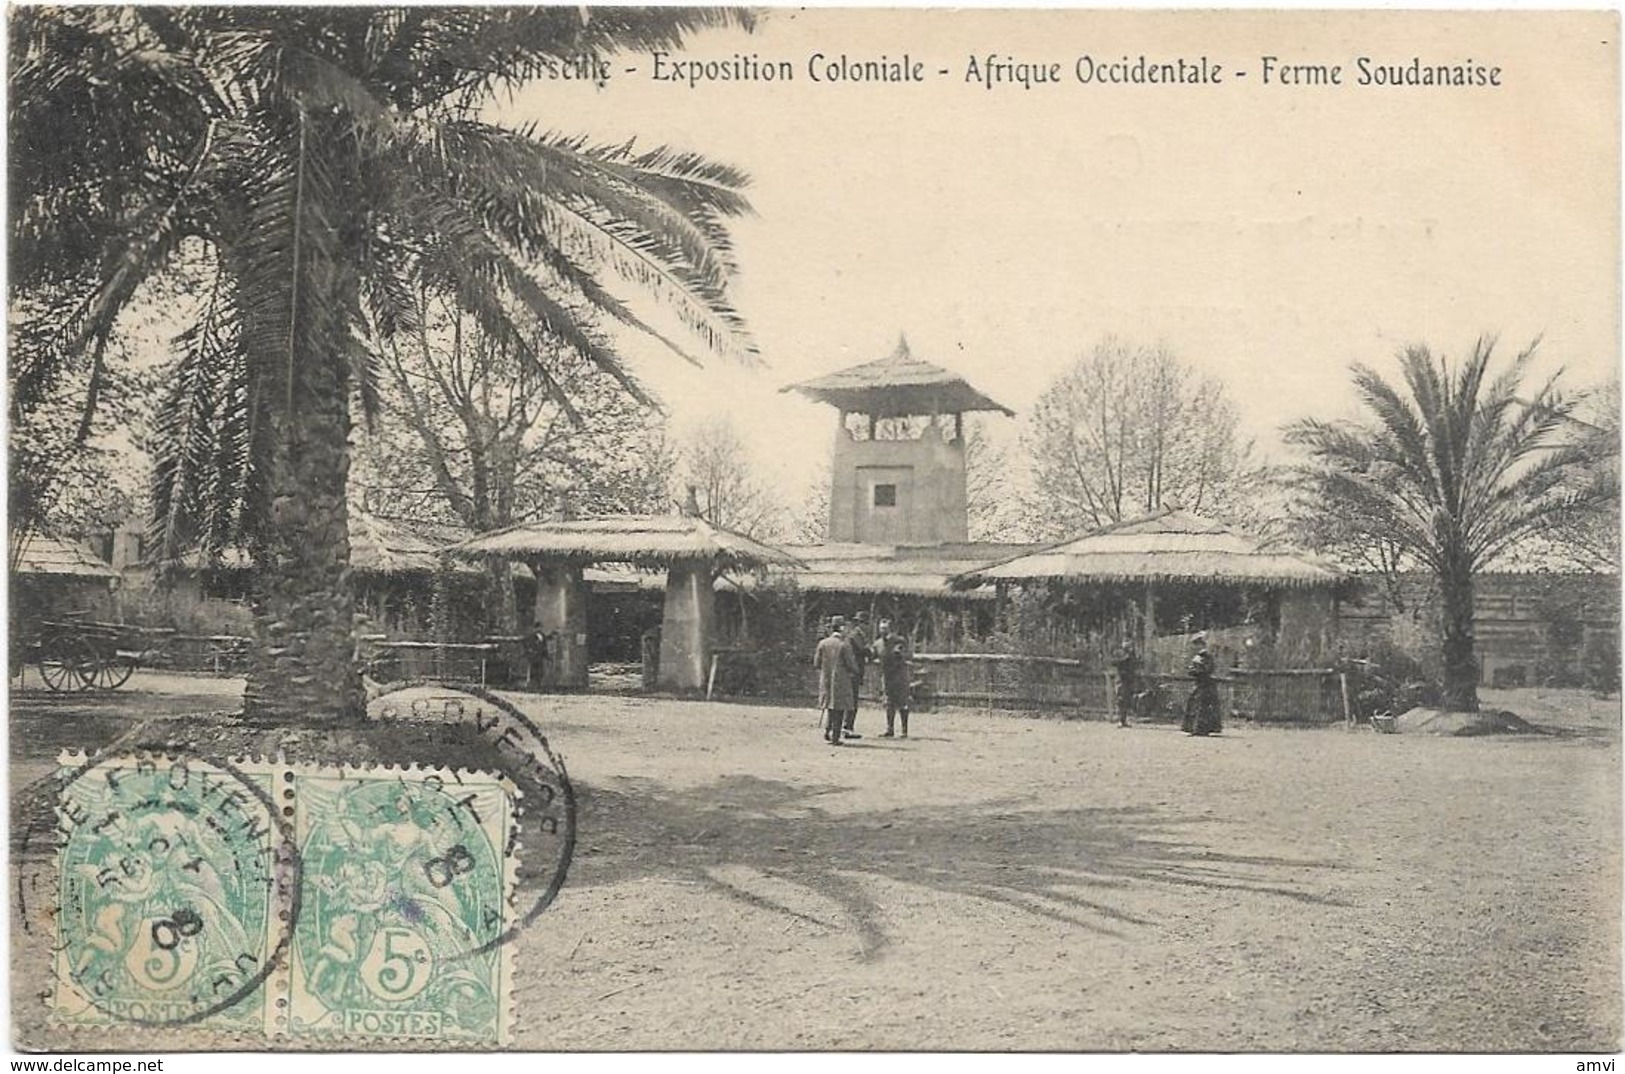 205 - 3849 13 Marseille, Exposition Coloniale - Afrique Occidentale - Ferme Soudanaise - Paire Blanc - Expositions Coloniales 1906 - 1922